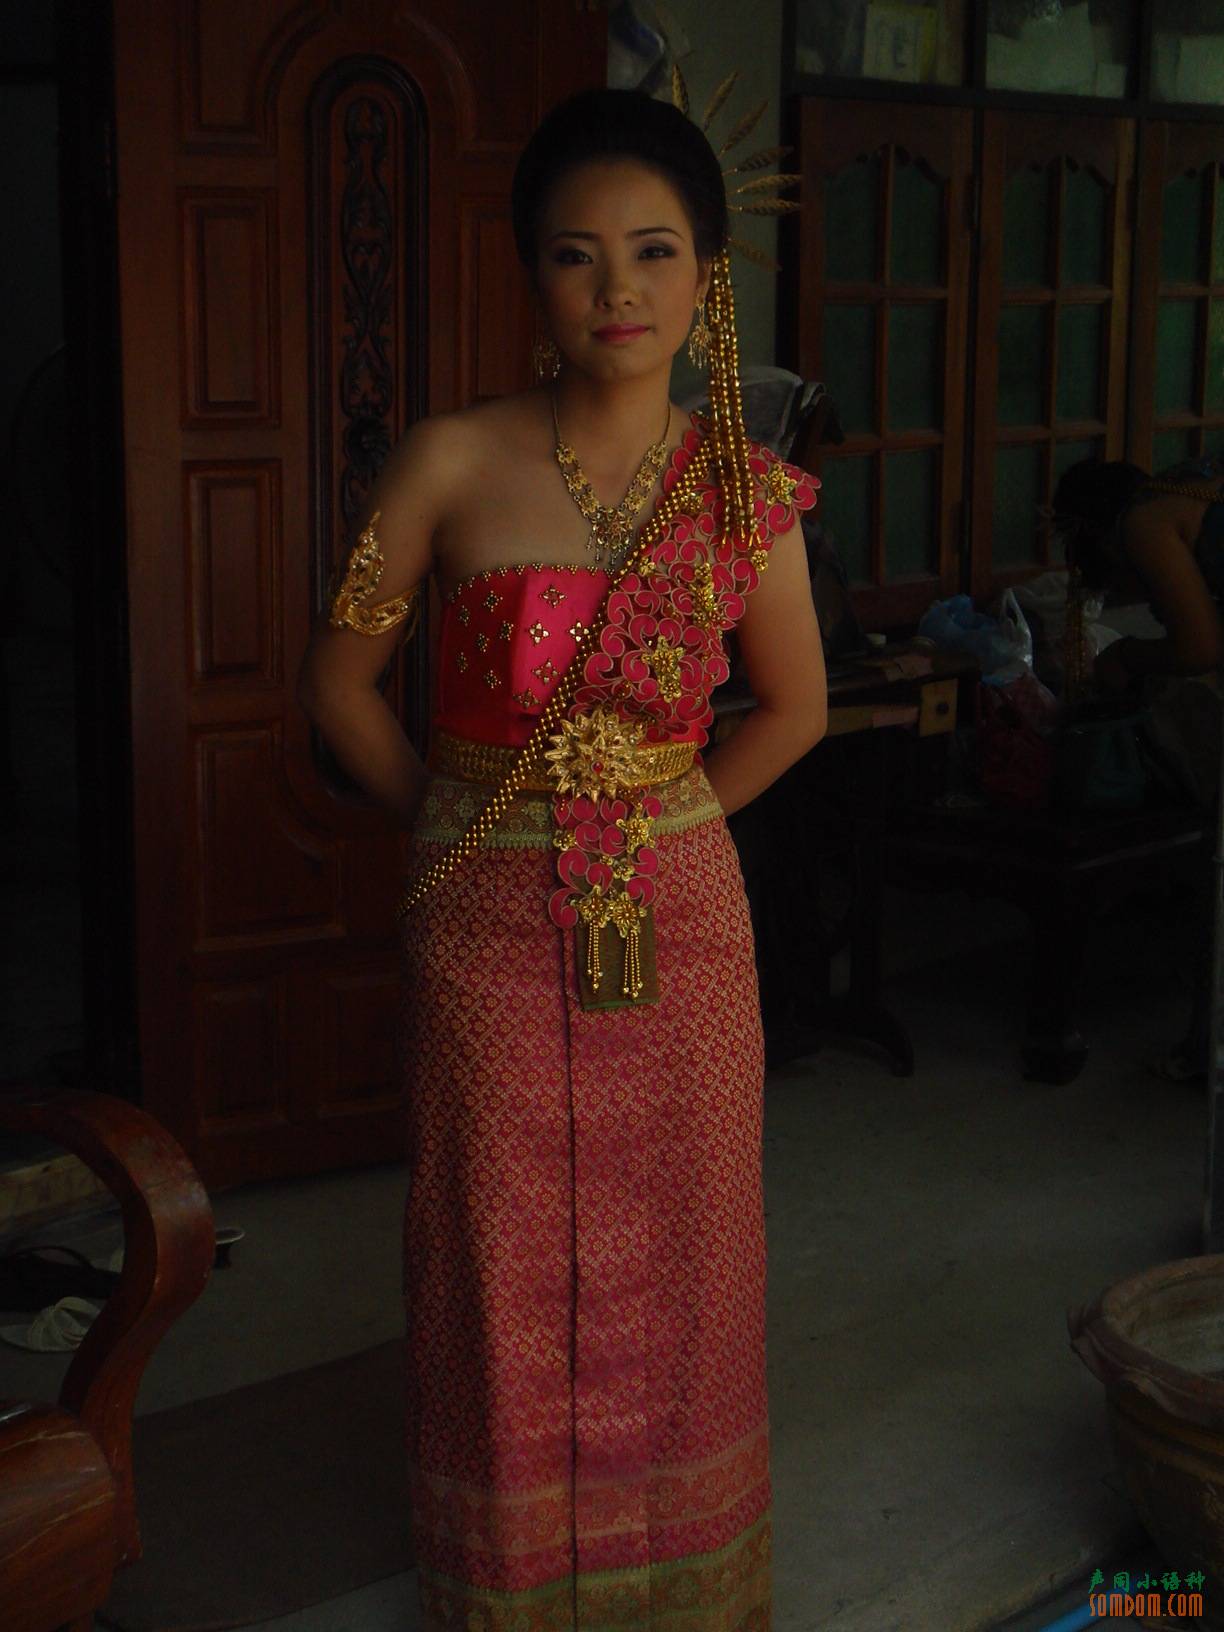 相当穿典型的泰国礼服的泰国女孩 库存图片. 图片 包括有 身分, 聚会所, 摆在, 人力, 纵向, 魅力 - 47494325